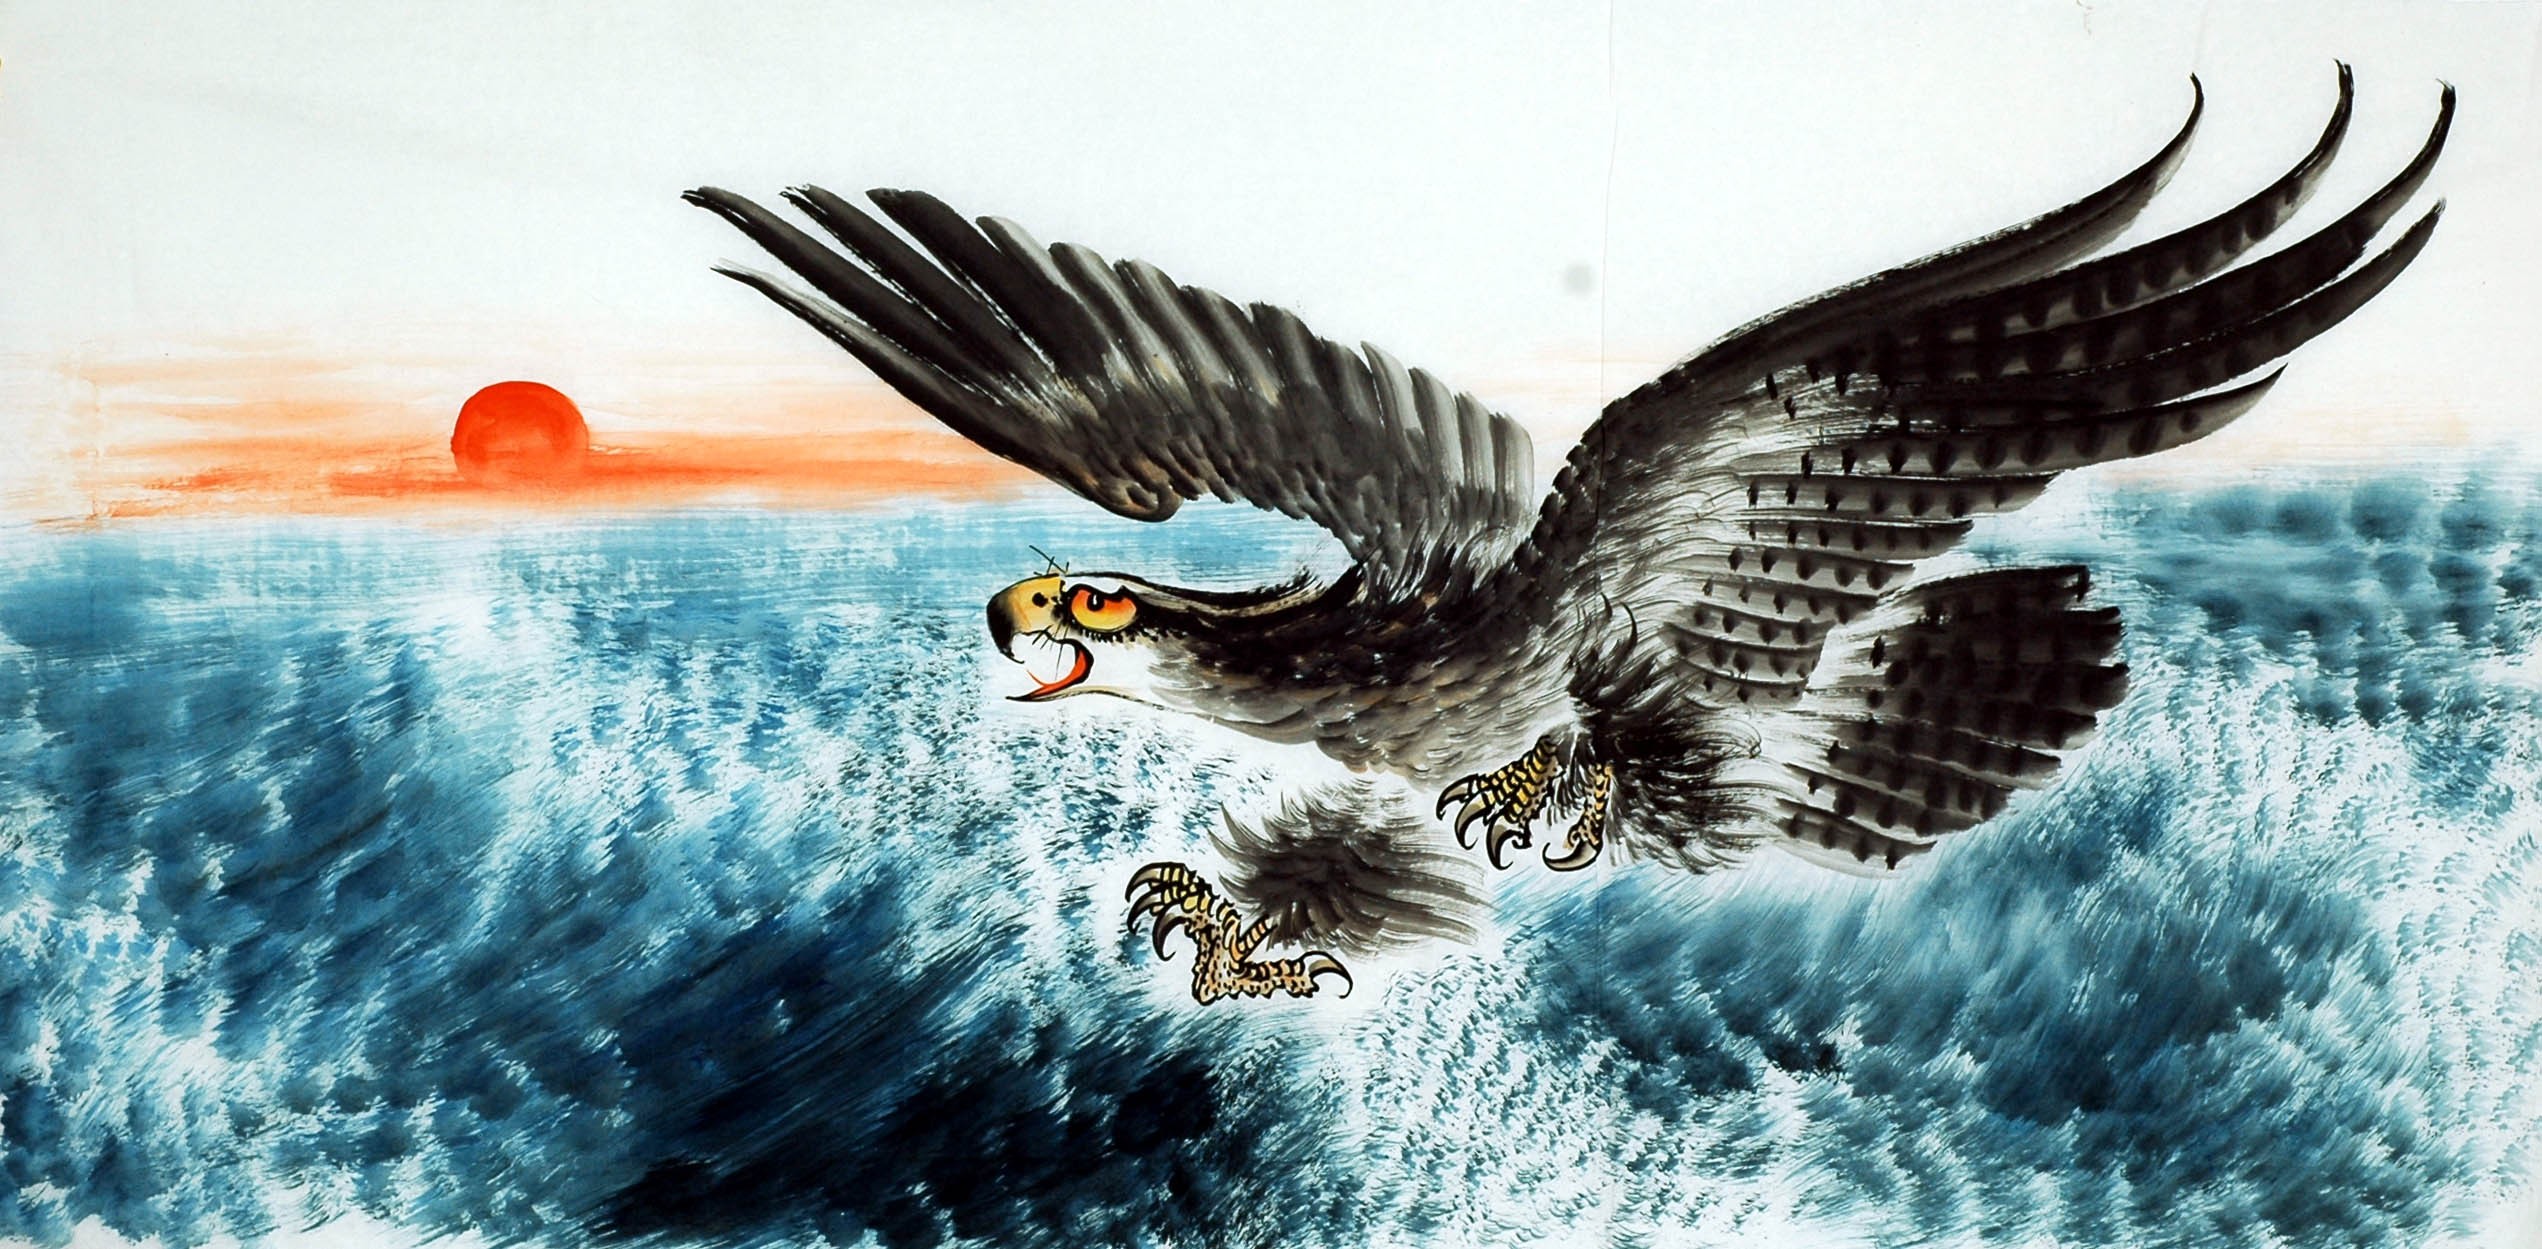 Chinese Eagle Painting - CNAG010699